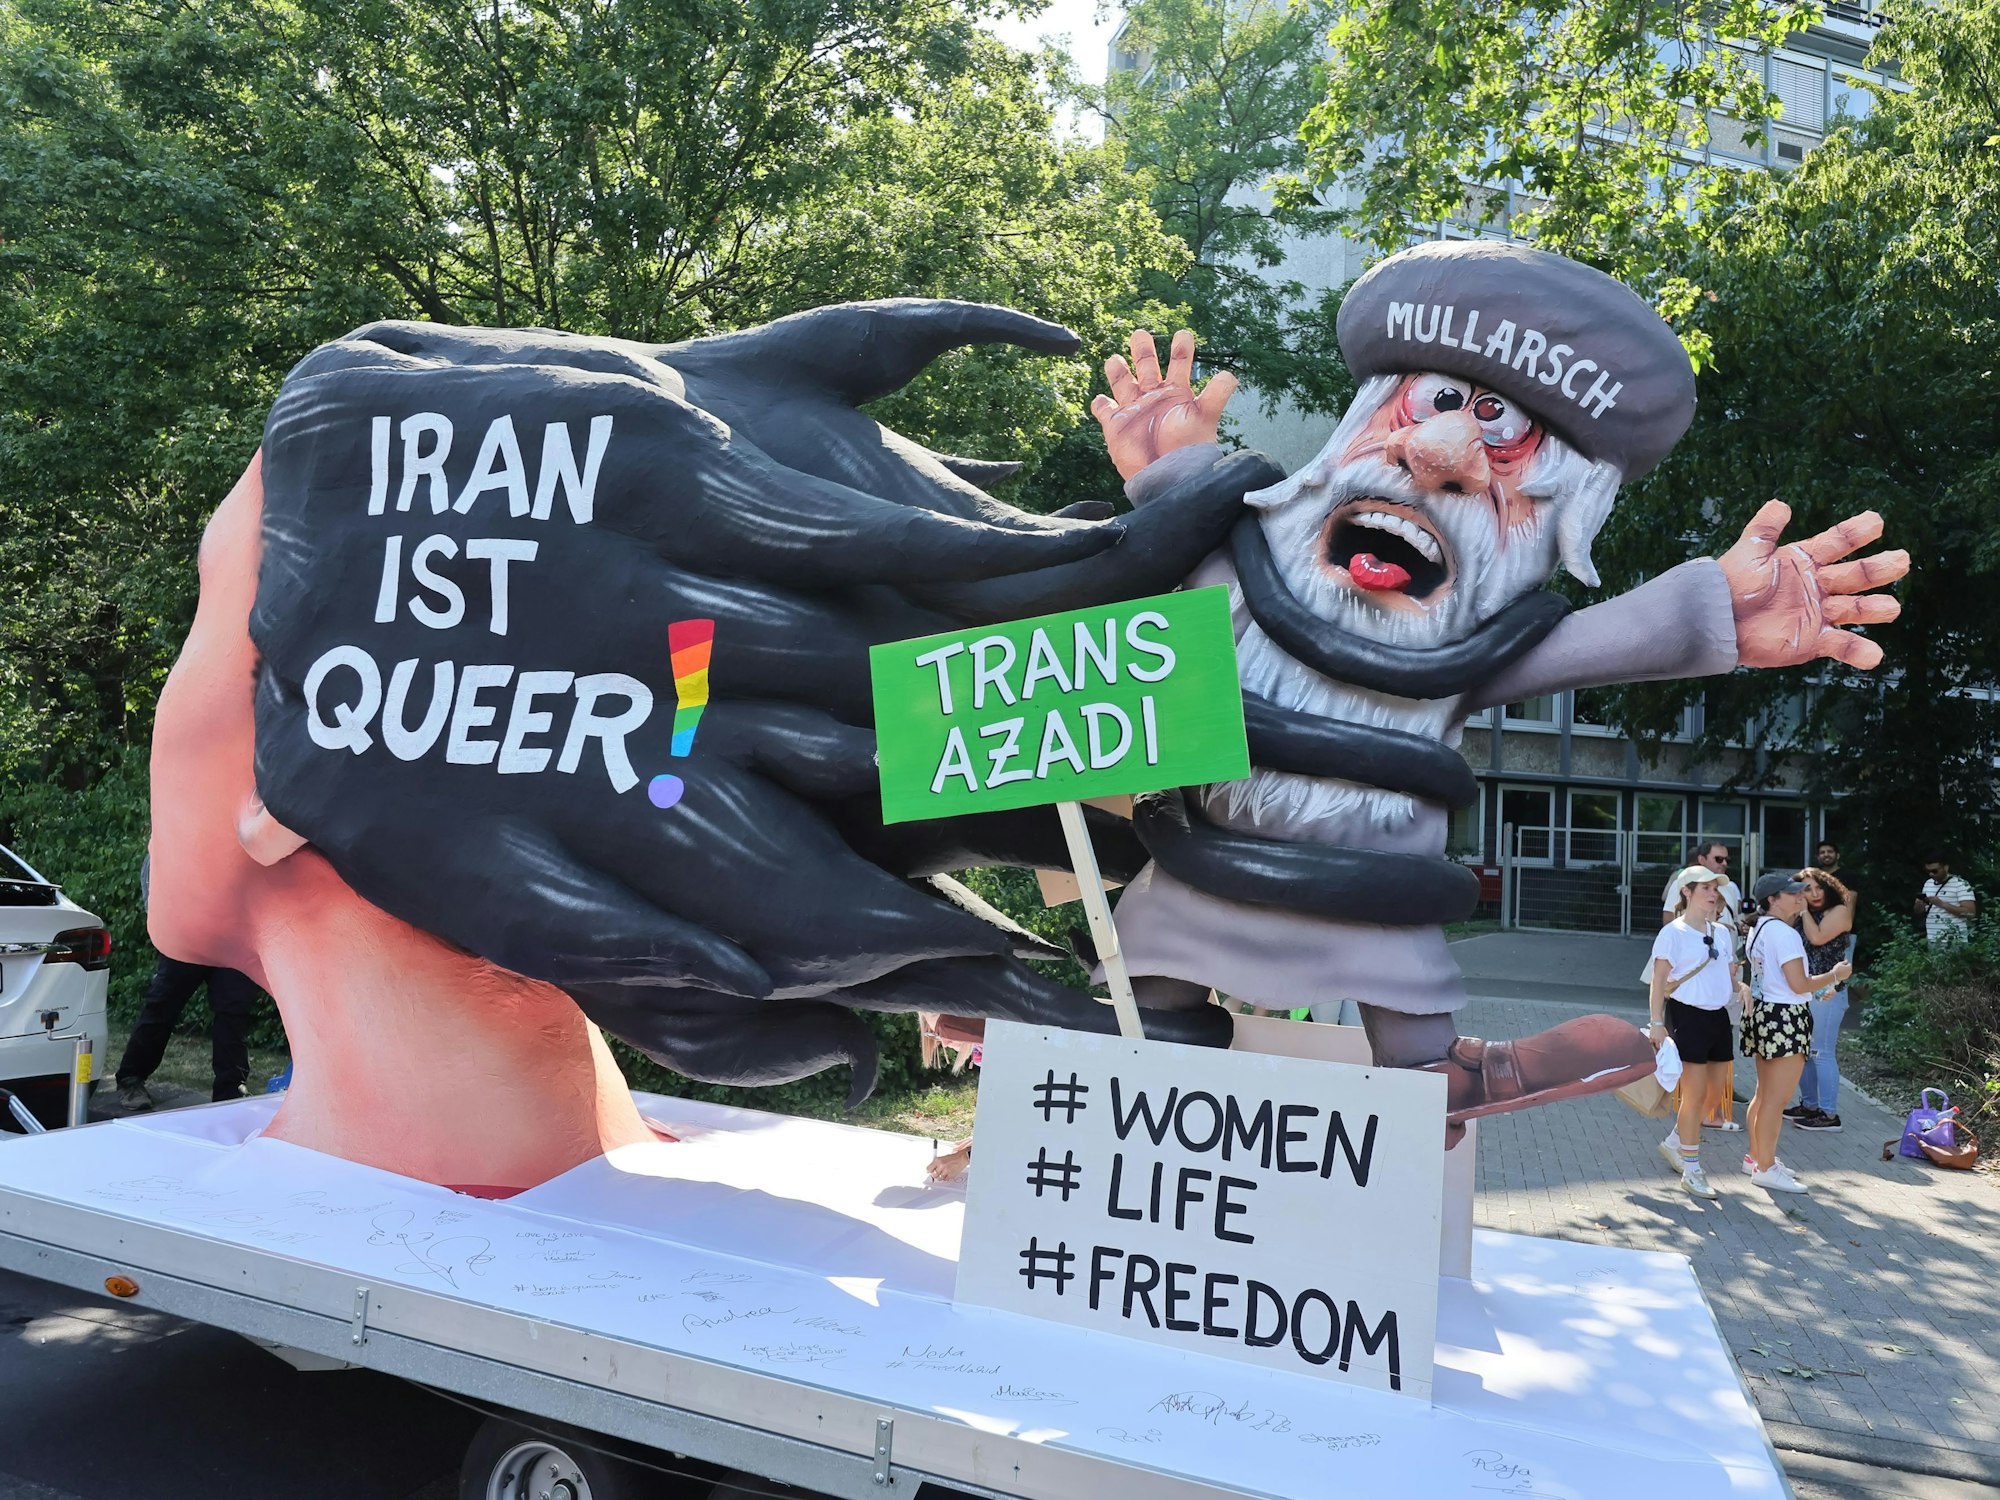 Die Botschaft dürfte klar sein – Iran ist queer. Auch dieser Wagen ist beim CSD in Köln dabei.

